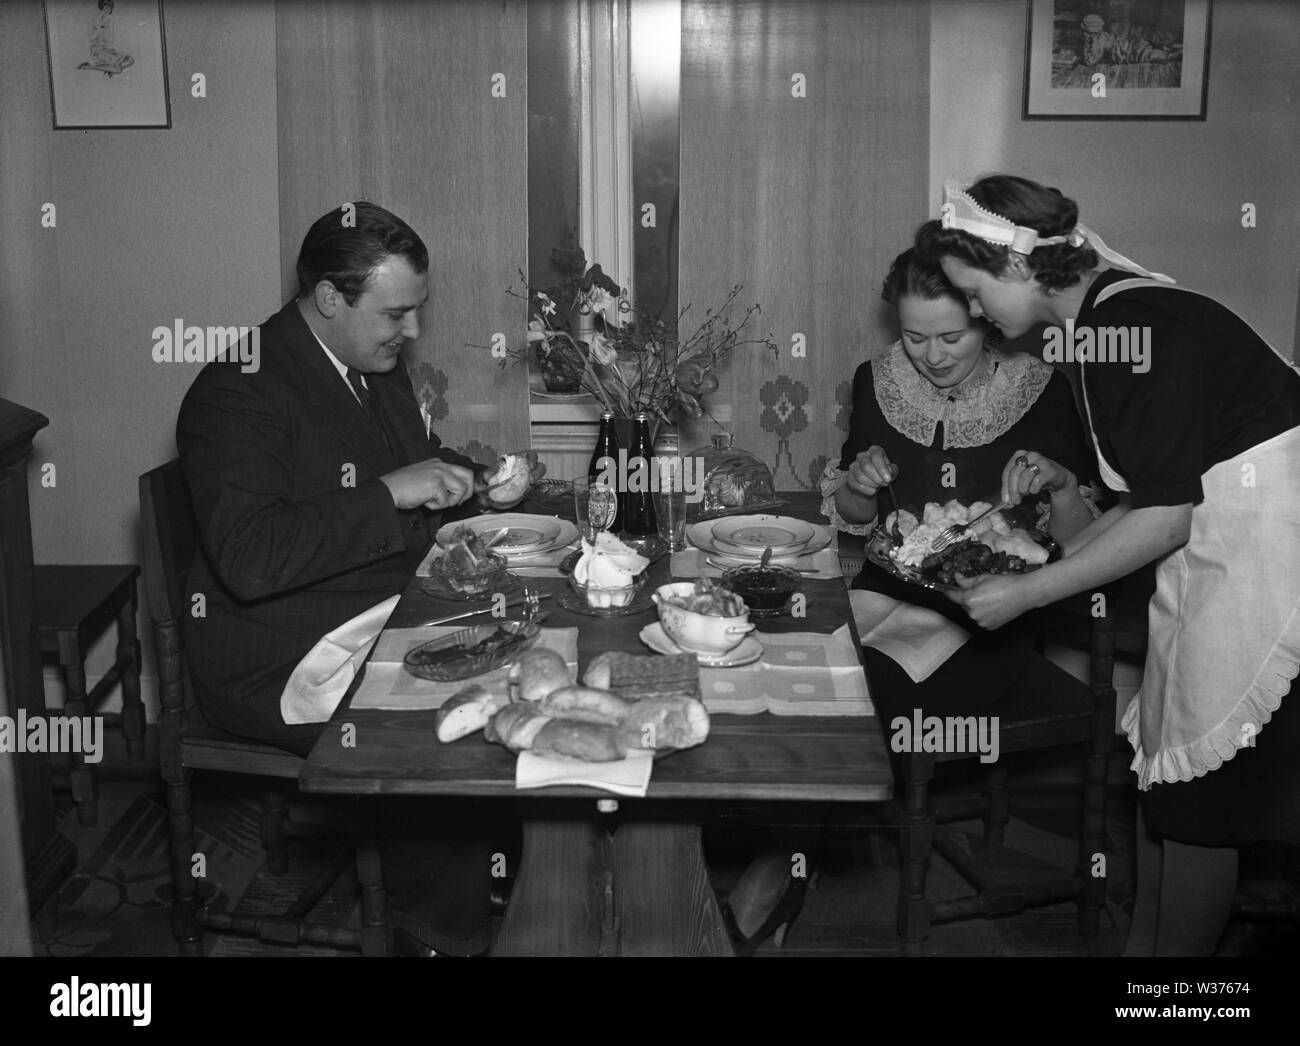 Leben in den 1940er Jahren. Eine junge Frau, die als Dienstmädchen ist, das Abendessen serviert, ein Mann und eine Frau am Tisch sitzen. Sie ist ordentlich in einem weißen Schürze gekleidet. Schweden 1940. Kristoffersson ref 55-7 Stockfoto